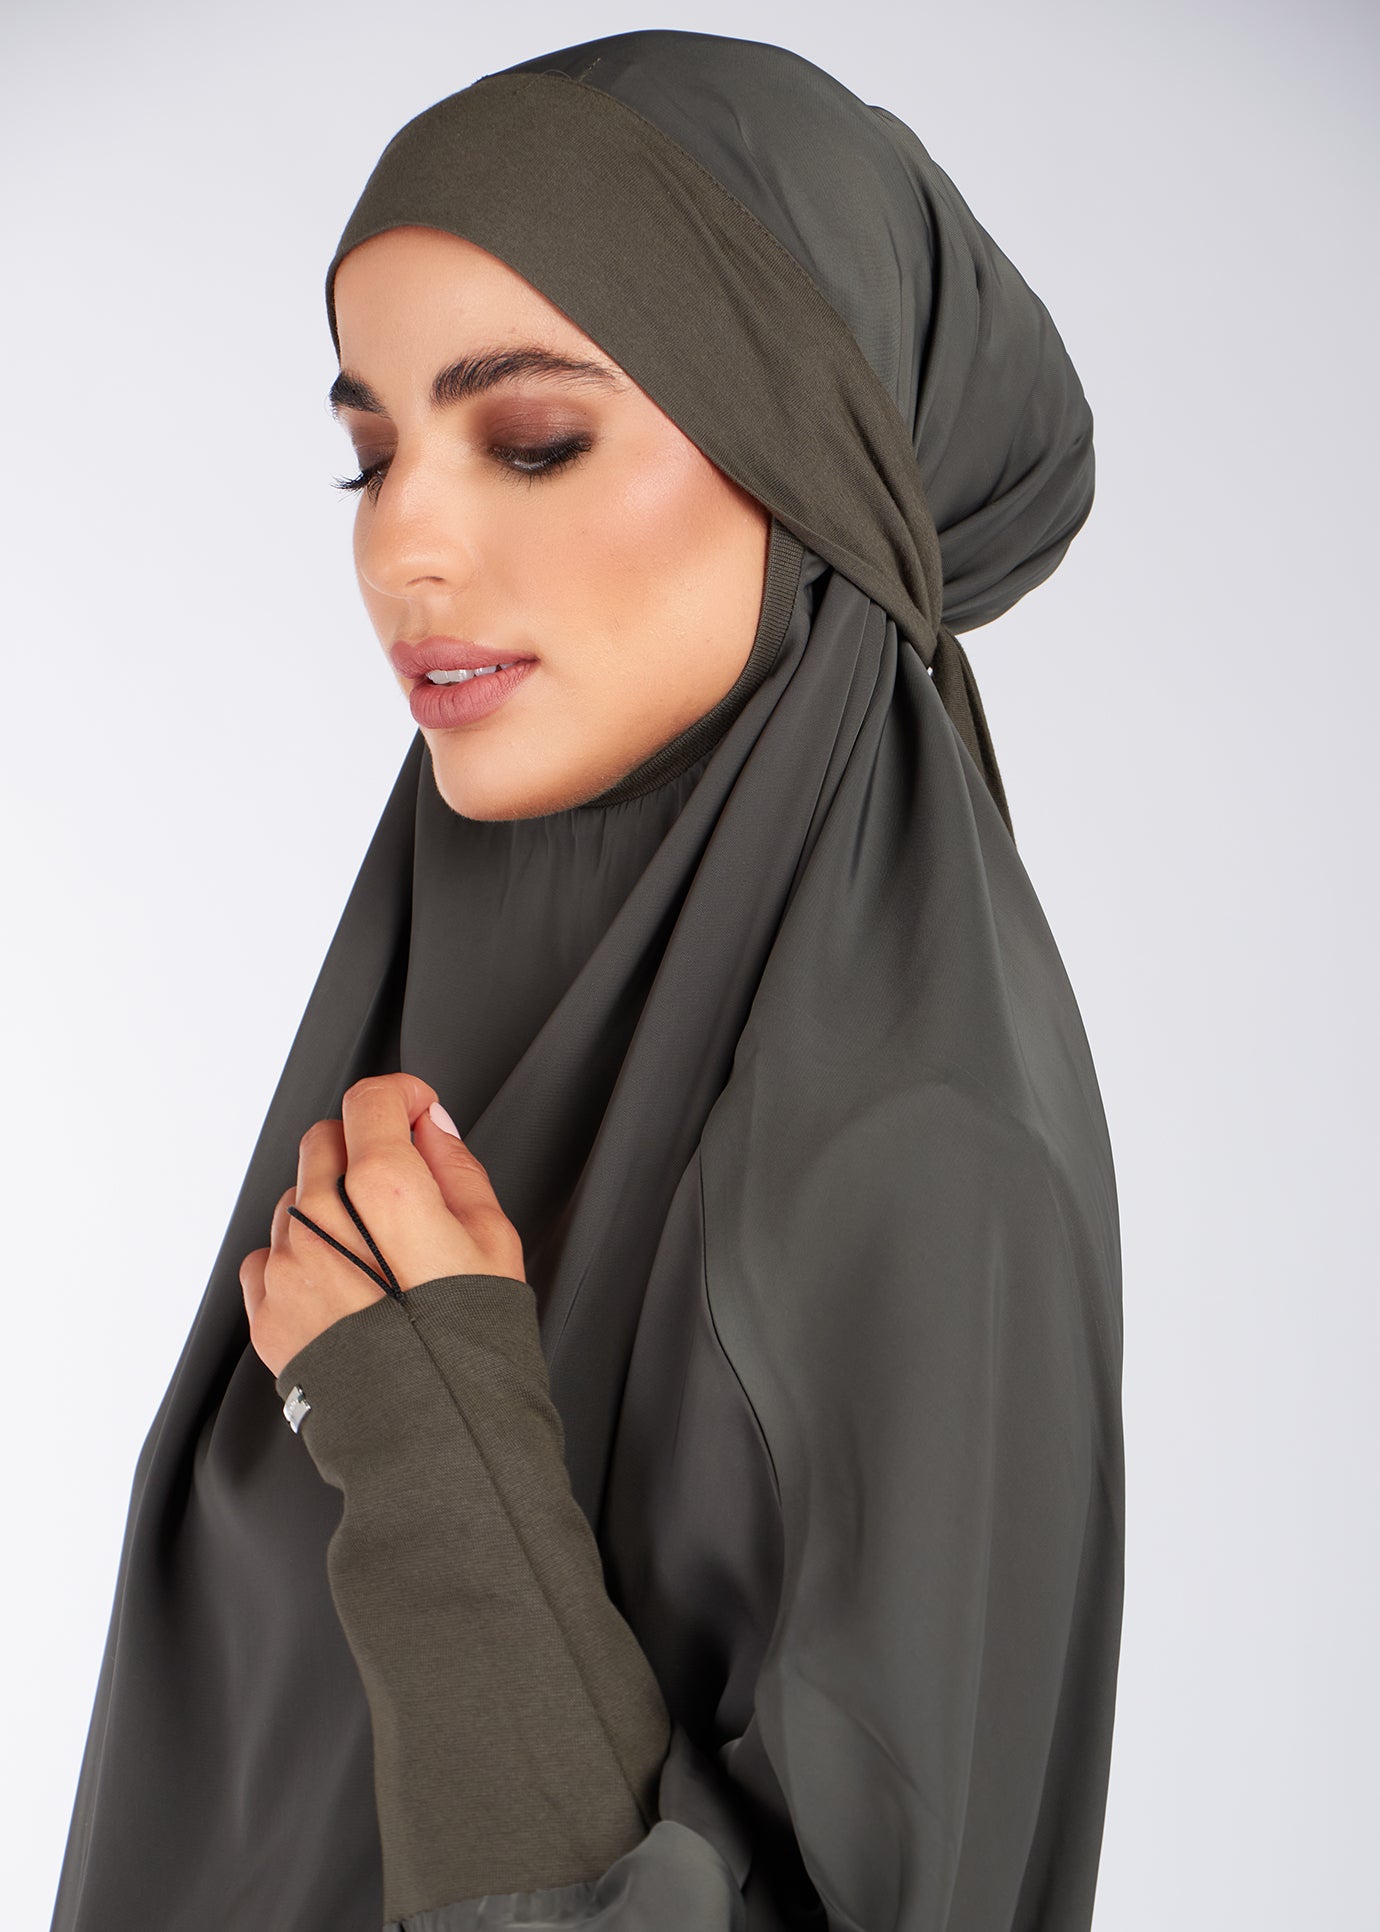 Jilbab Olive - Prayer Outfit